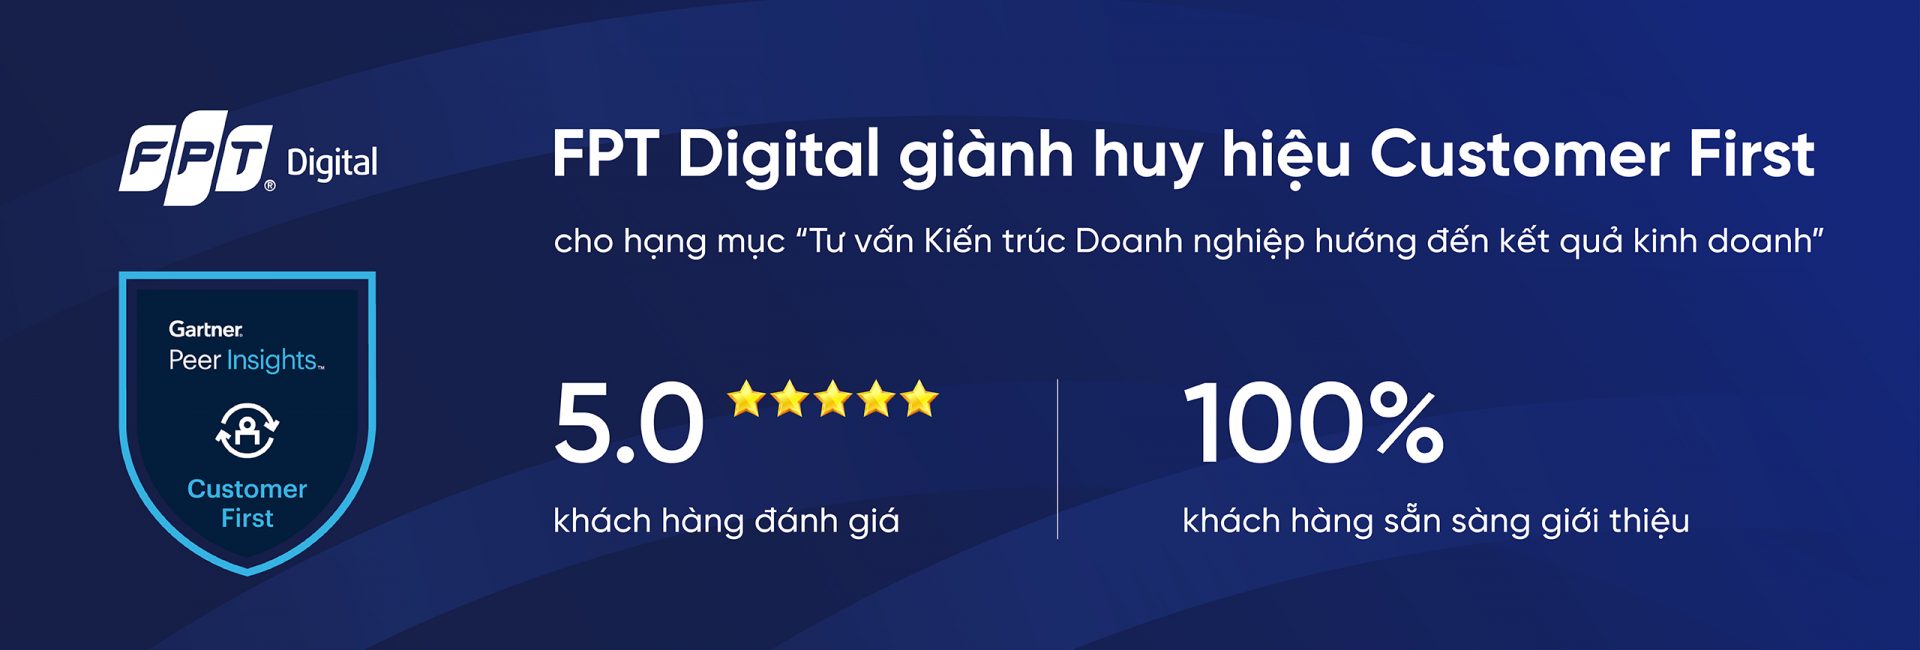 FPT Digital wins “Customer First” badge from Gartner Peer Insights™